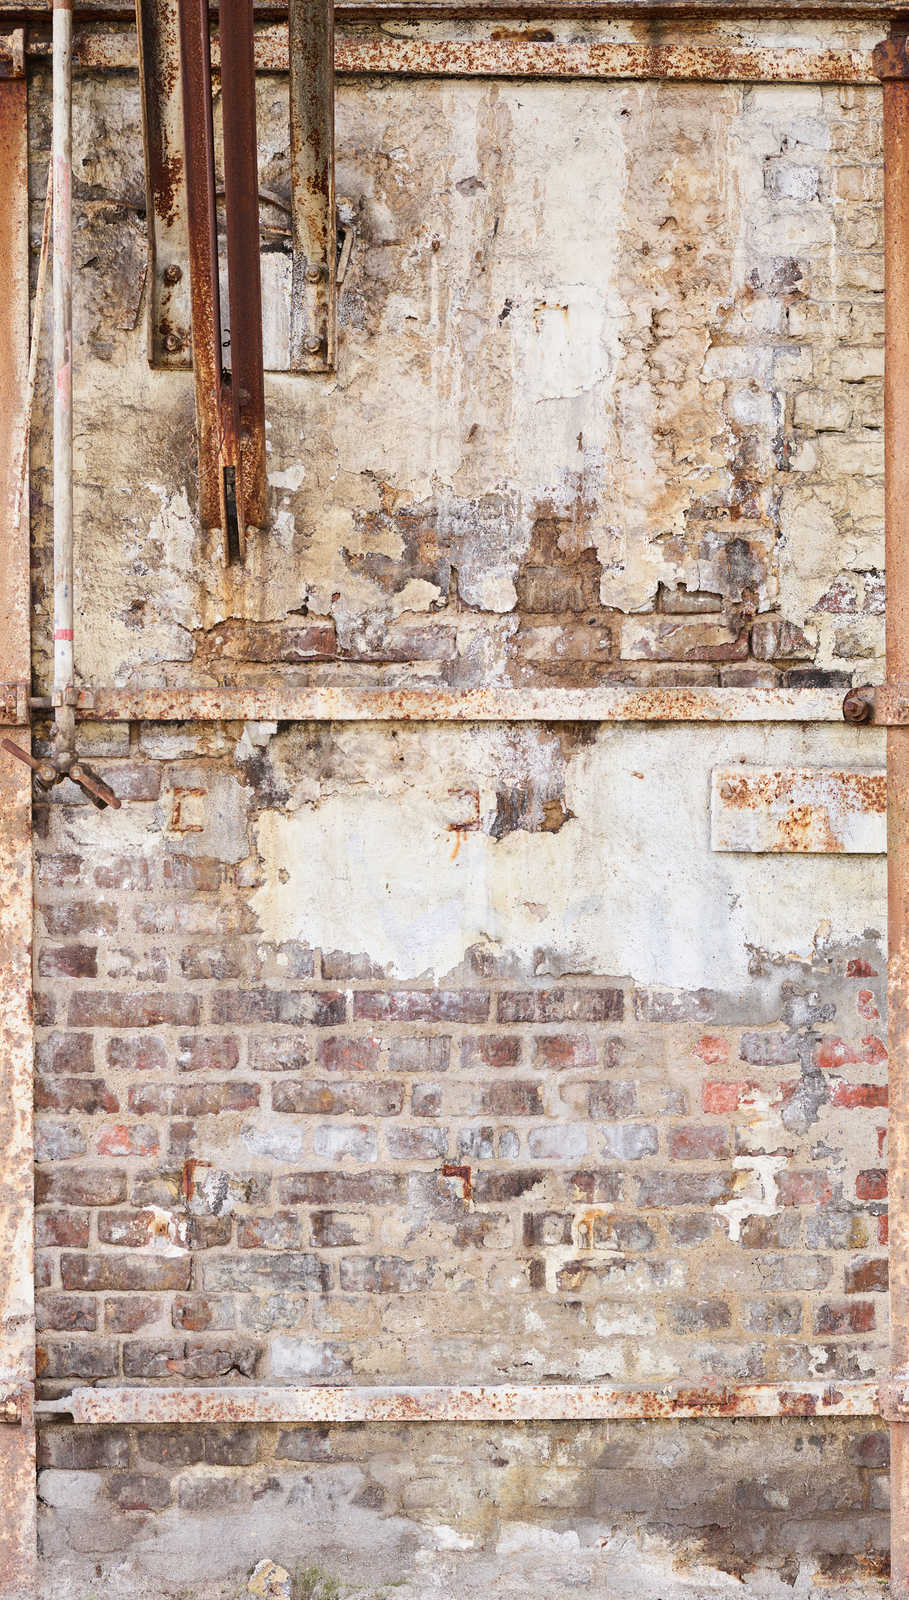             Vliesbehang oude bakstenen muur met roestig metalen frame - crème, bruin, beige
        